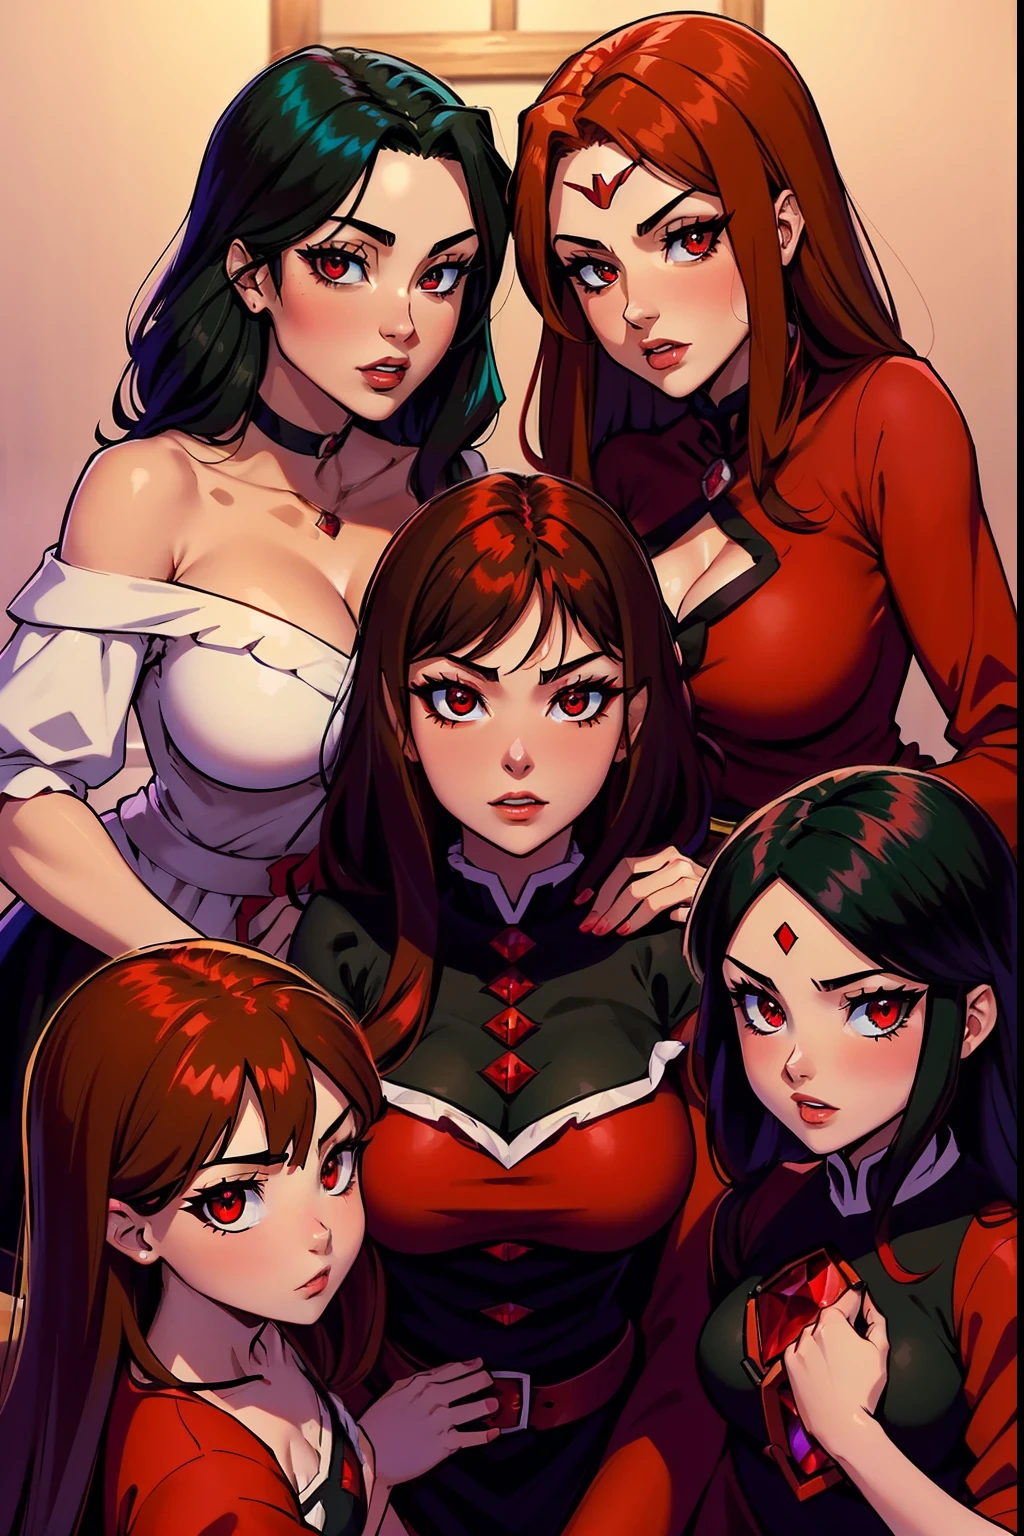 Megumin (Megumin a les cheveux noirs, les yeux rouges) avec ses trois petites filles Esmeralda, Rubis, Aria Rose : (Esmeralda a les cheveux bruns , les yeux rouges). (Rubis have Red Hair, yeux verts), (Aria Rose a les cheveux noirs, yeux bleus)